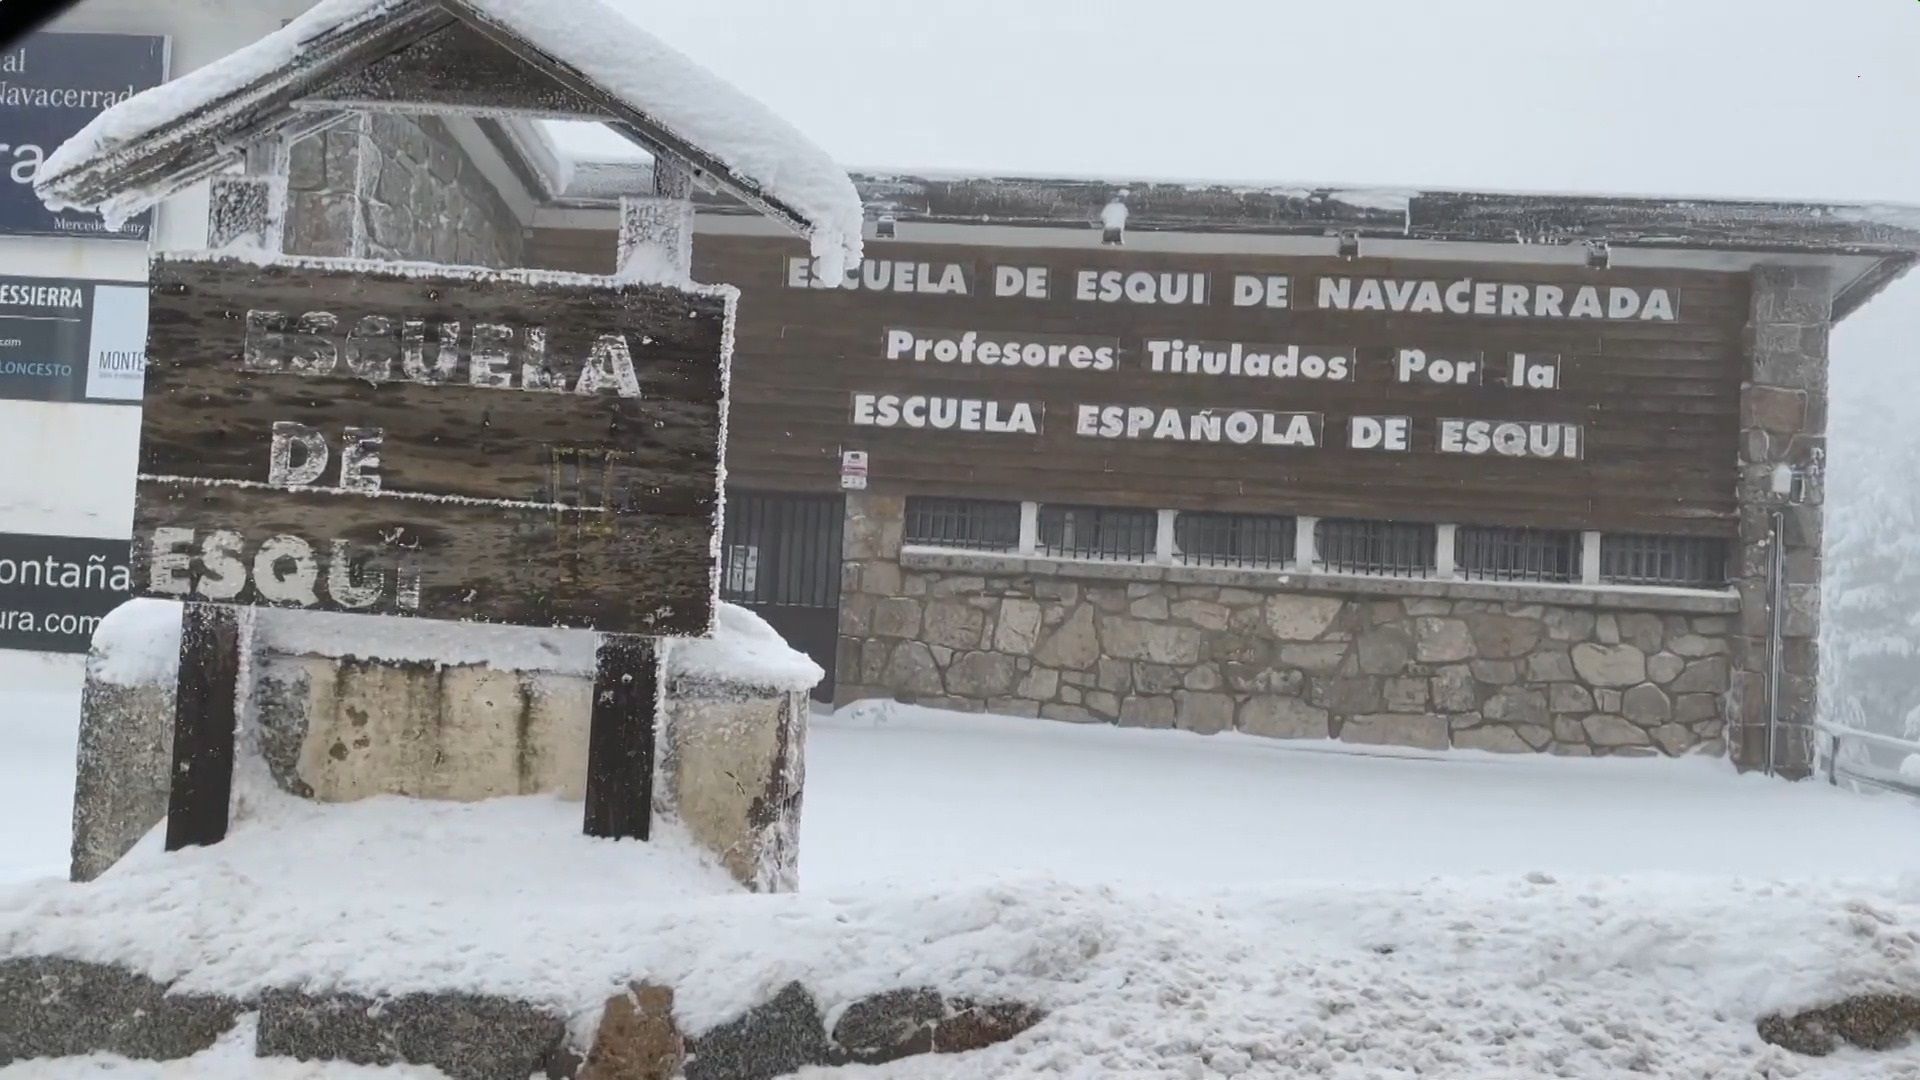 Escuela española de esquí de El Puerto de Navacerrada